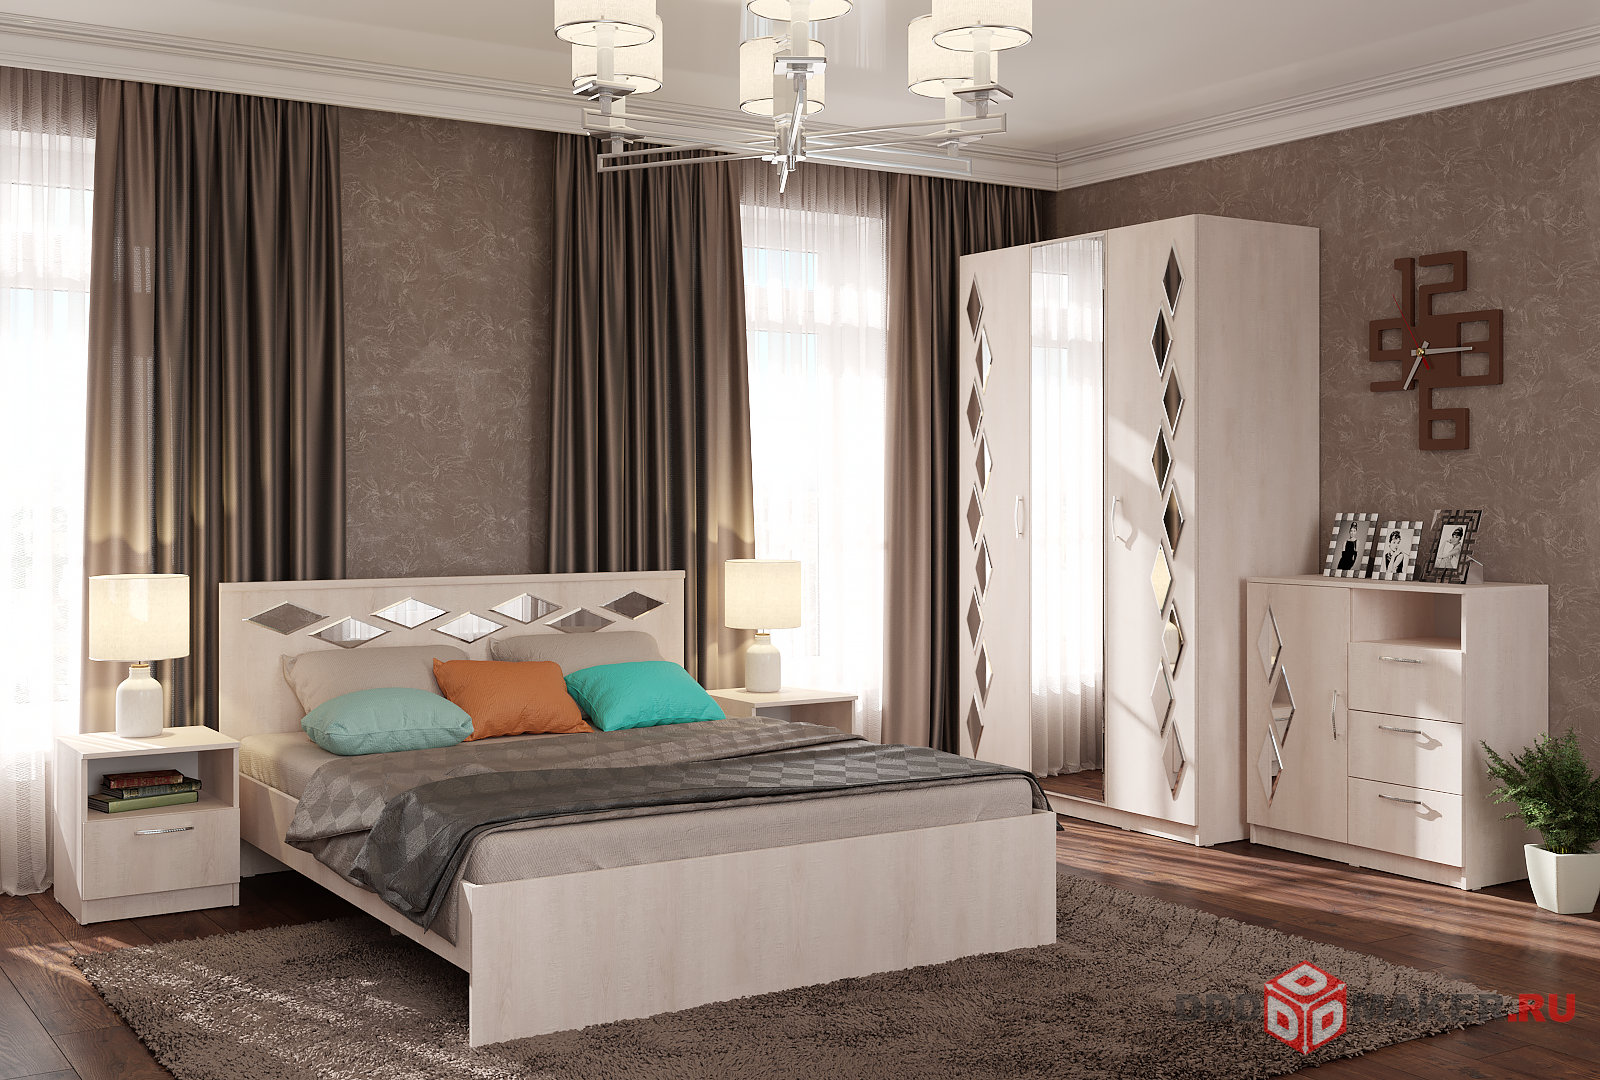 Мебель для спальни - моделирование и визуализация 1